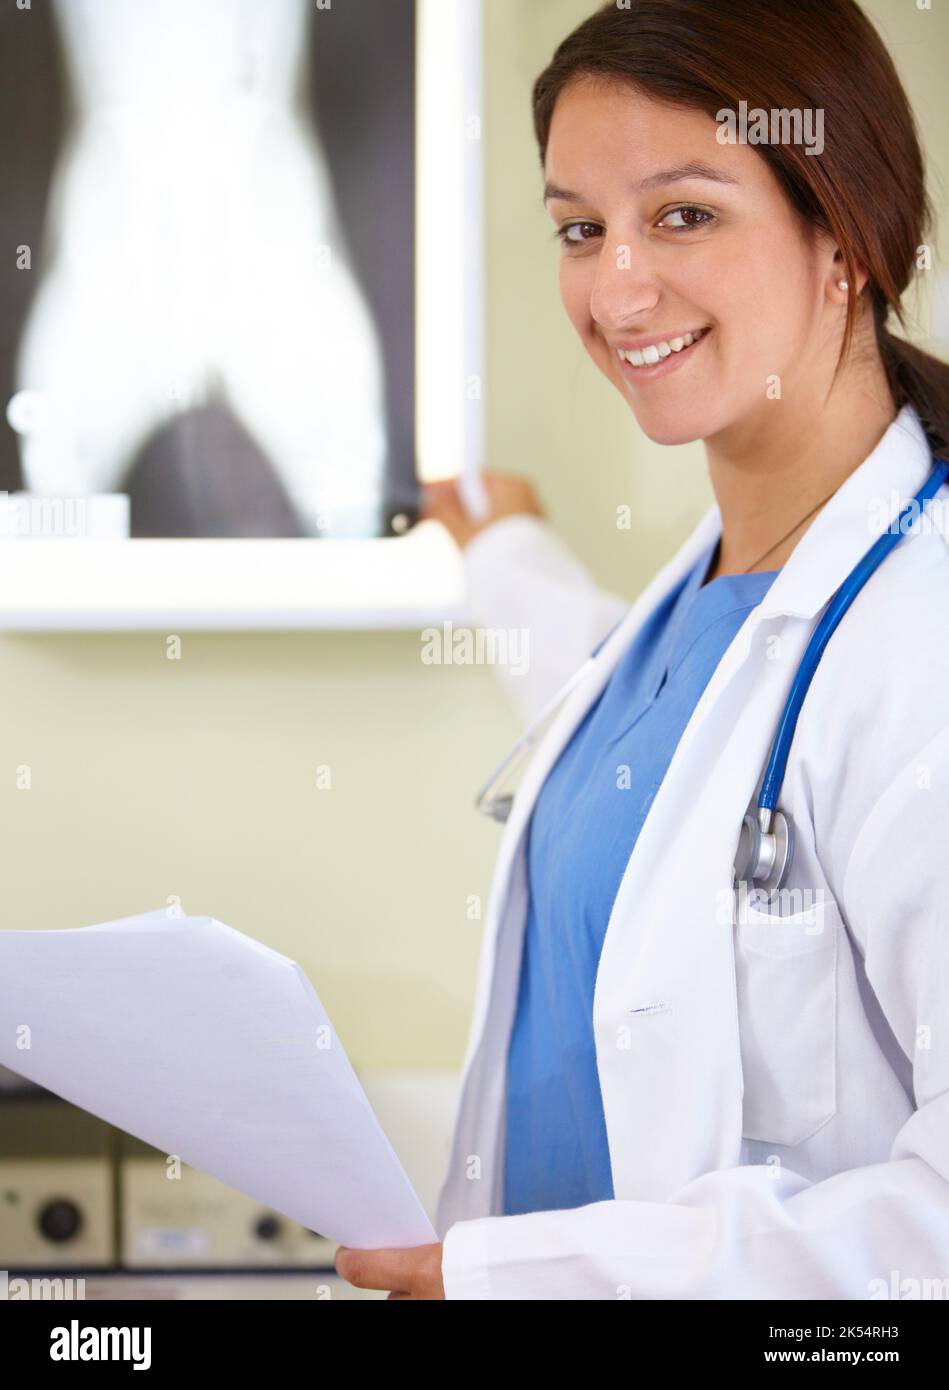 Señalando la solución al problema -Rayos-X. Retrato de una joven de la profesión médica apuntando a una radiografía. Foto de stock